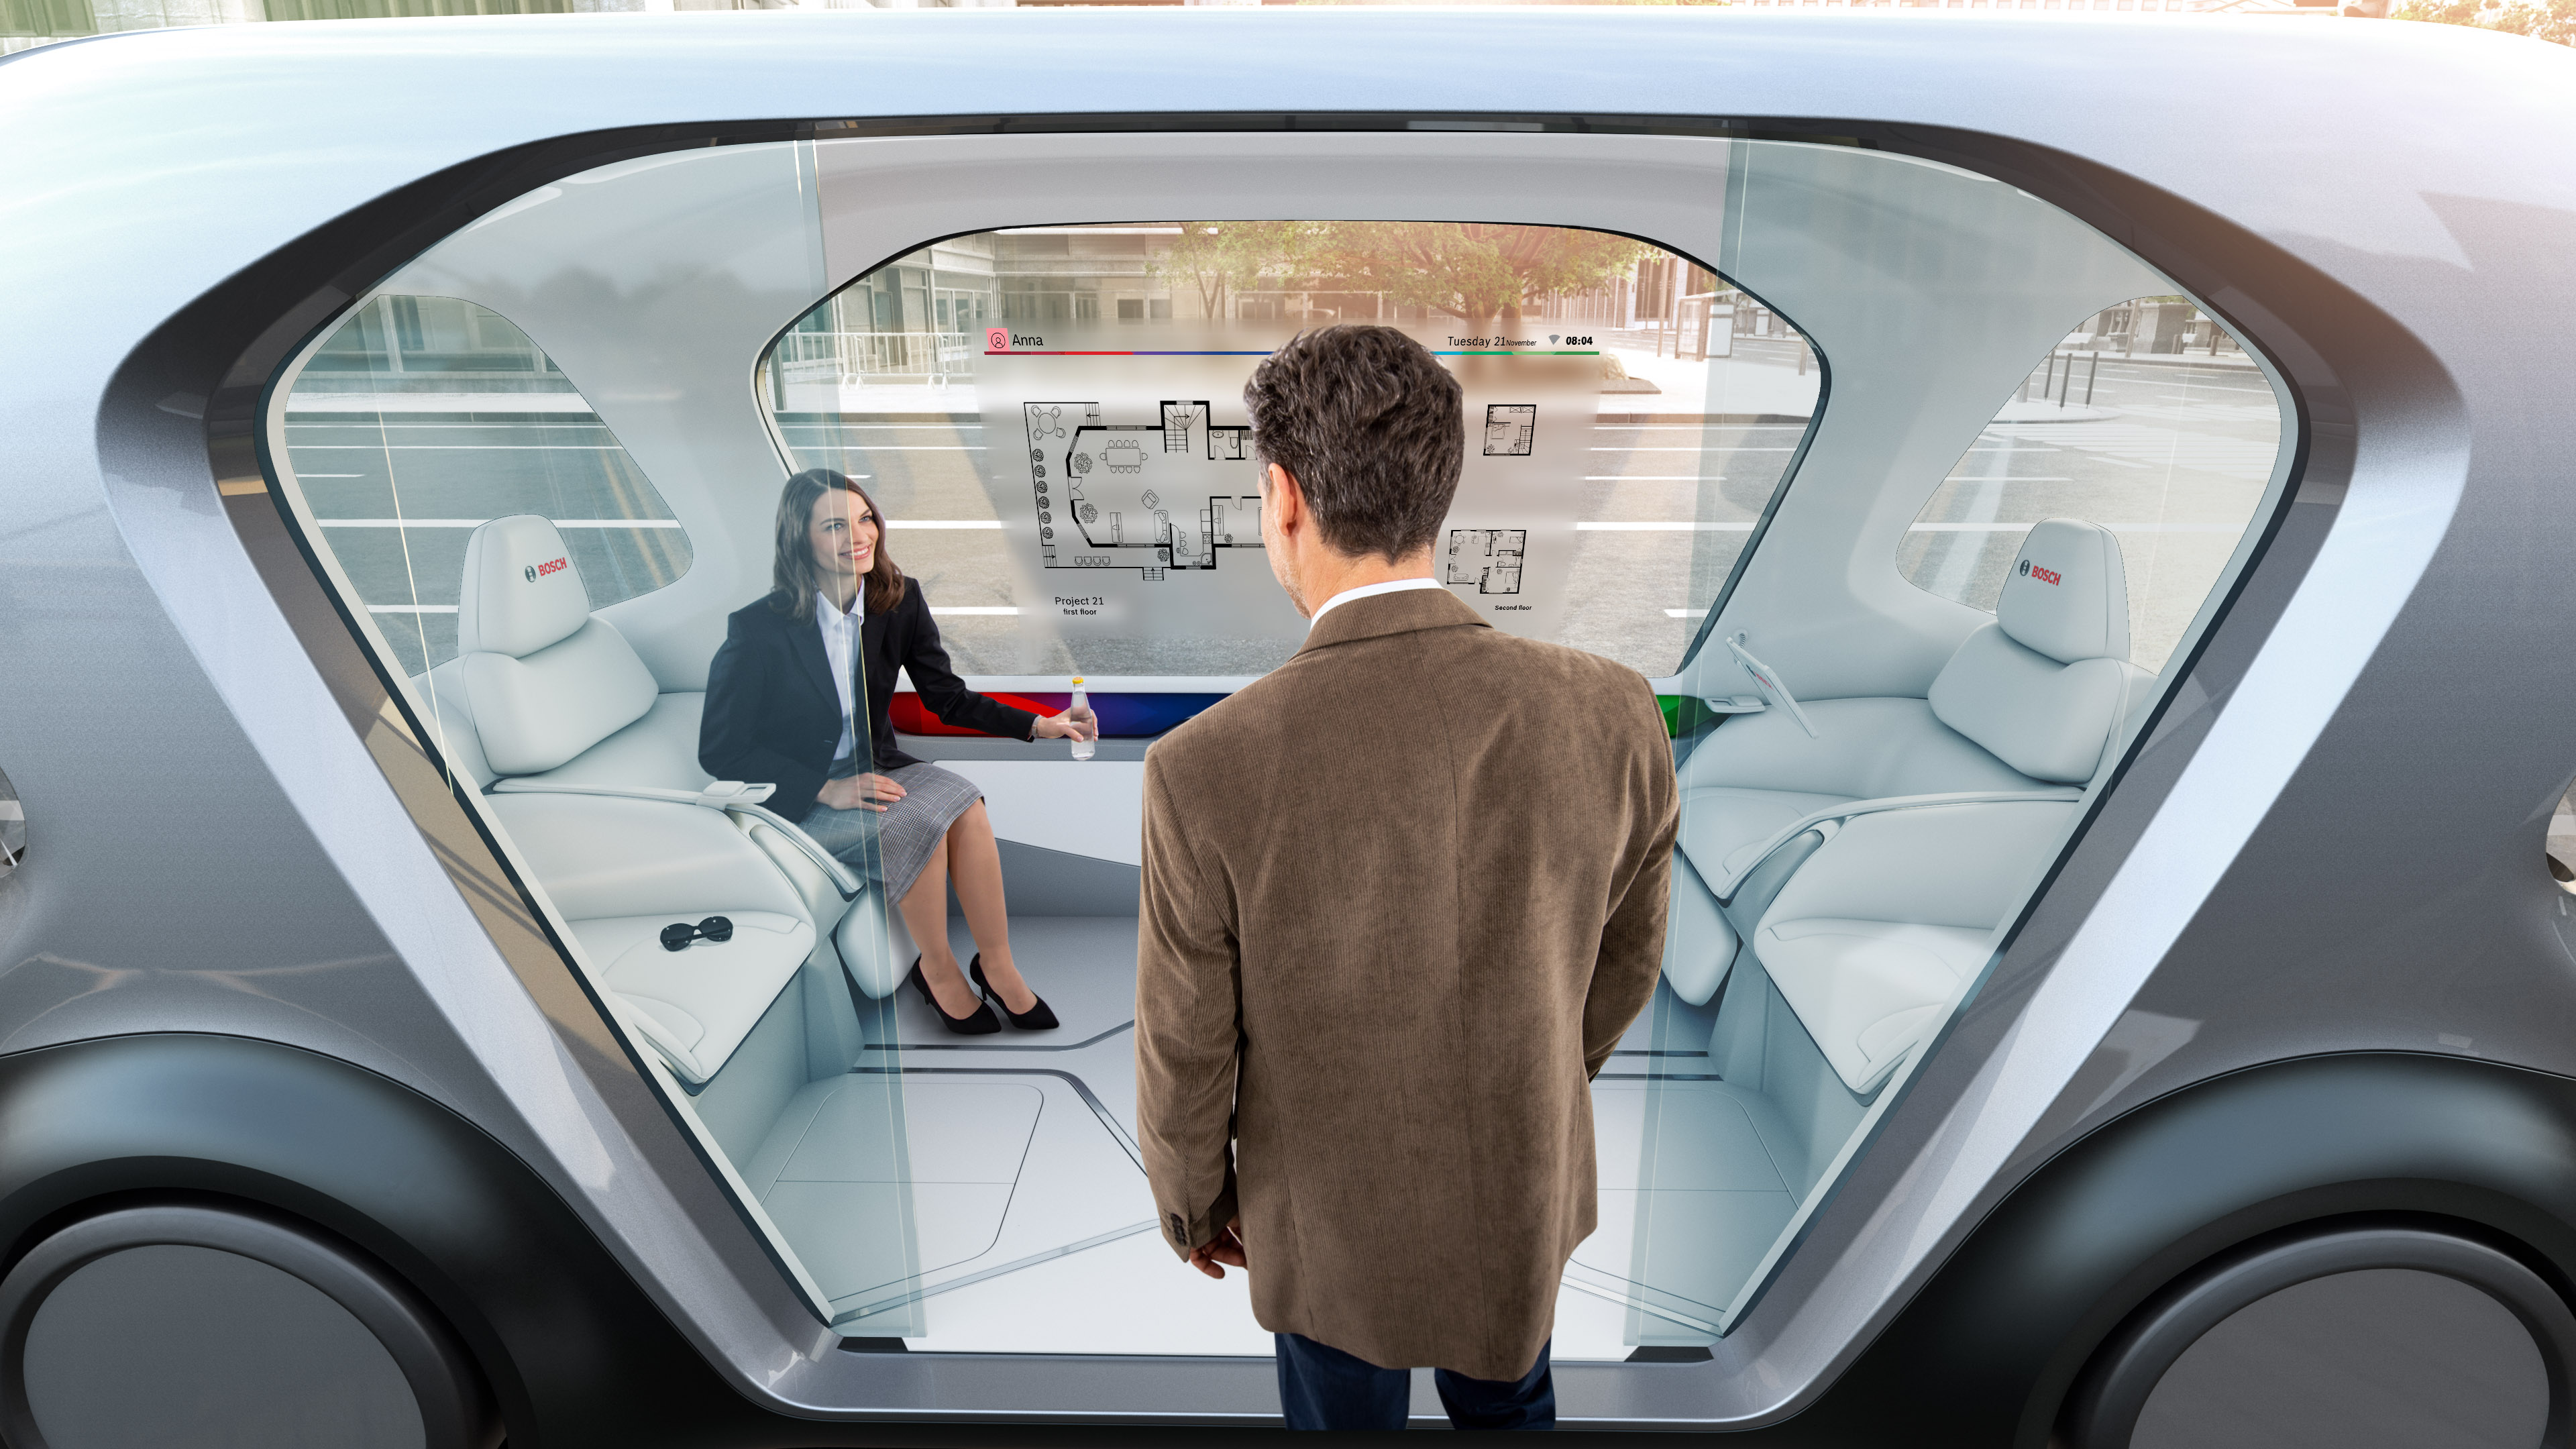 La mobilità del futuro secondo Bosch